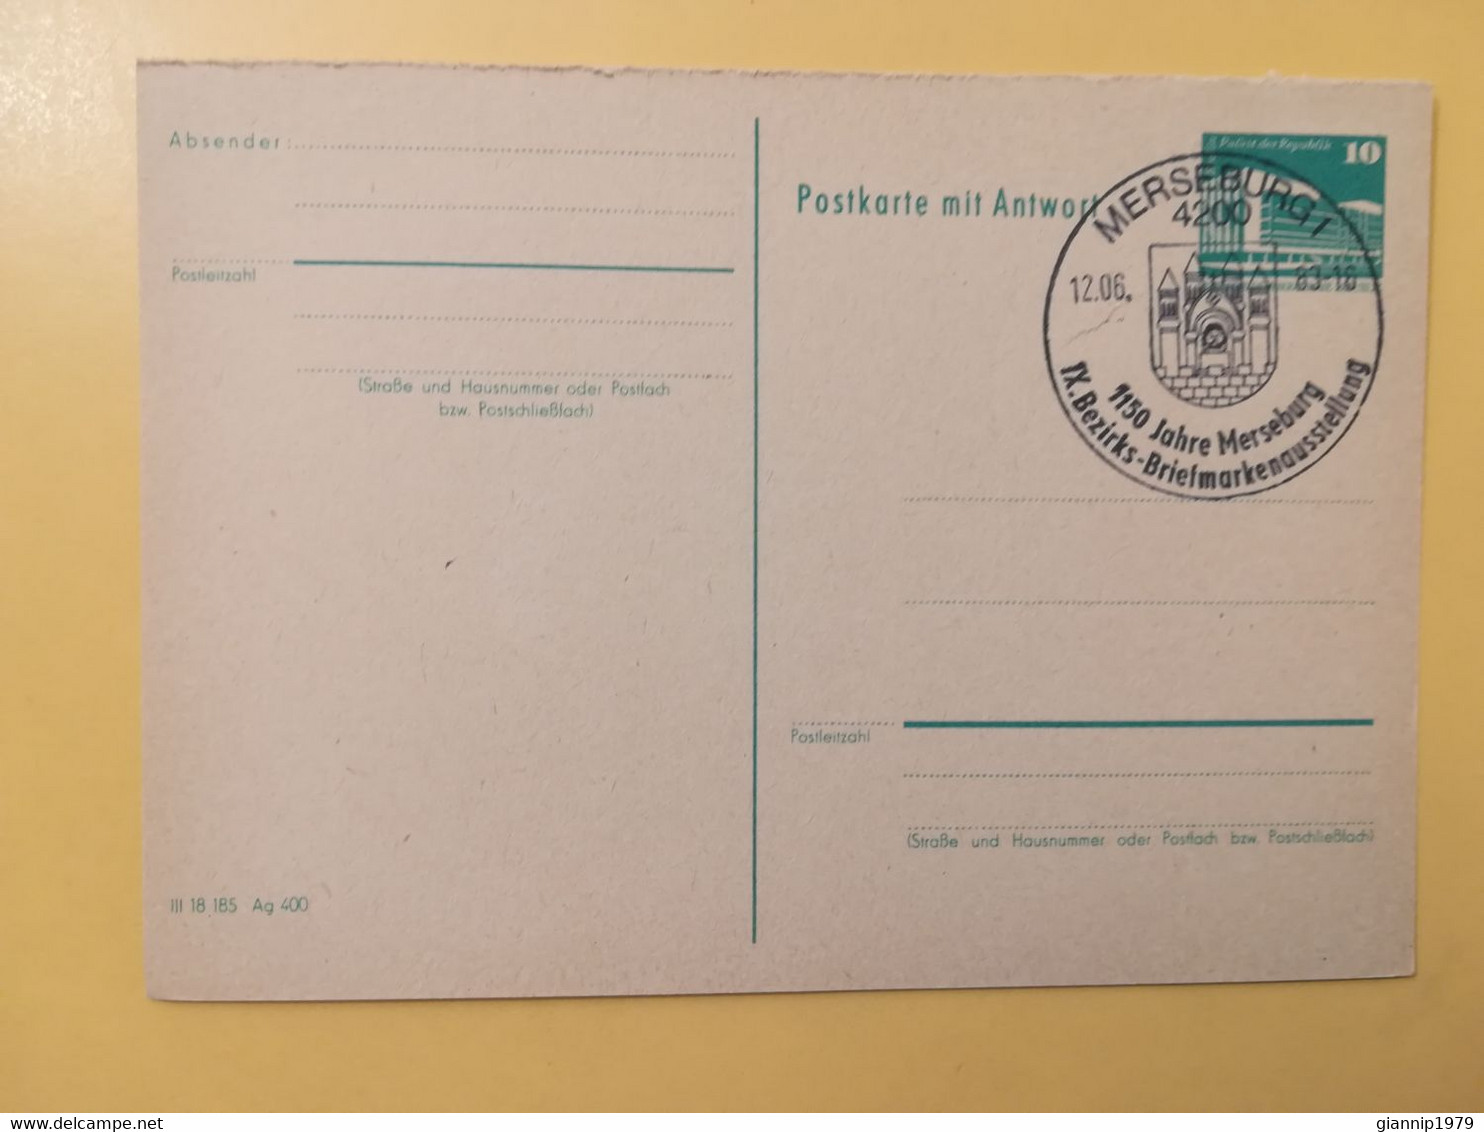 1983 INTERO CARTOLINA POSTALE POSTCARDS FDC GERMANIA DEUTSCHE DDR   OBLITERE' MERSEBURG 1 - Postkarten - Ungebraucht